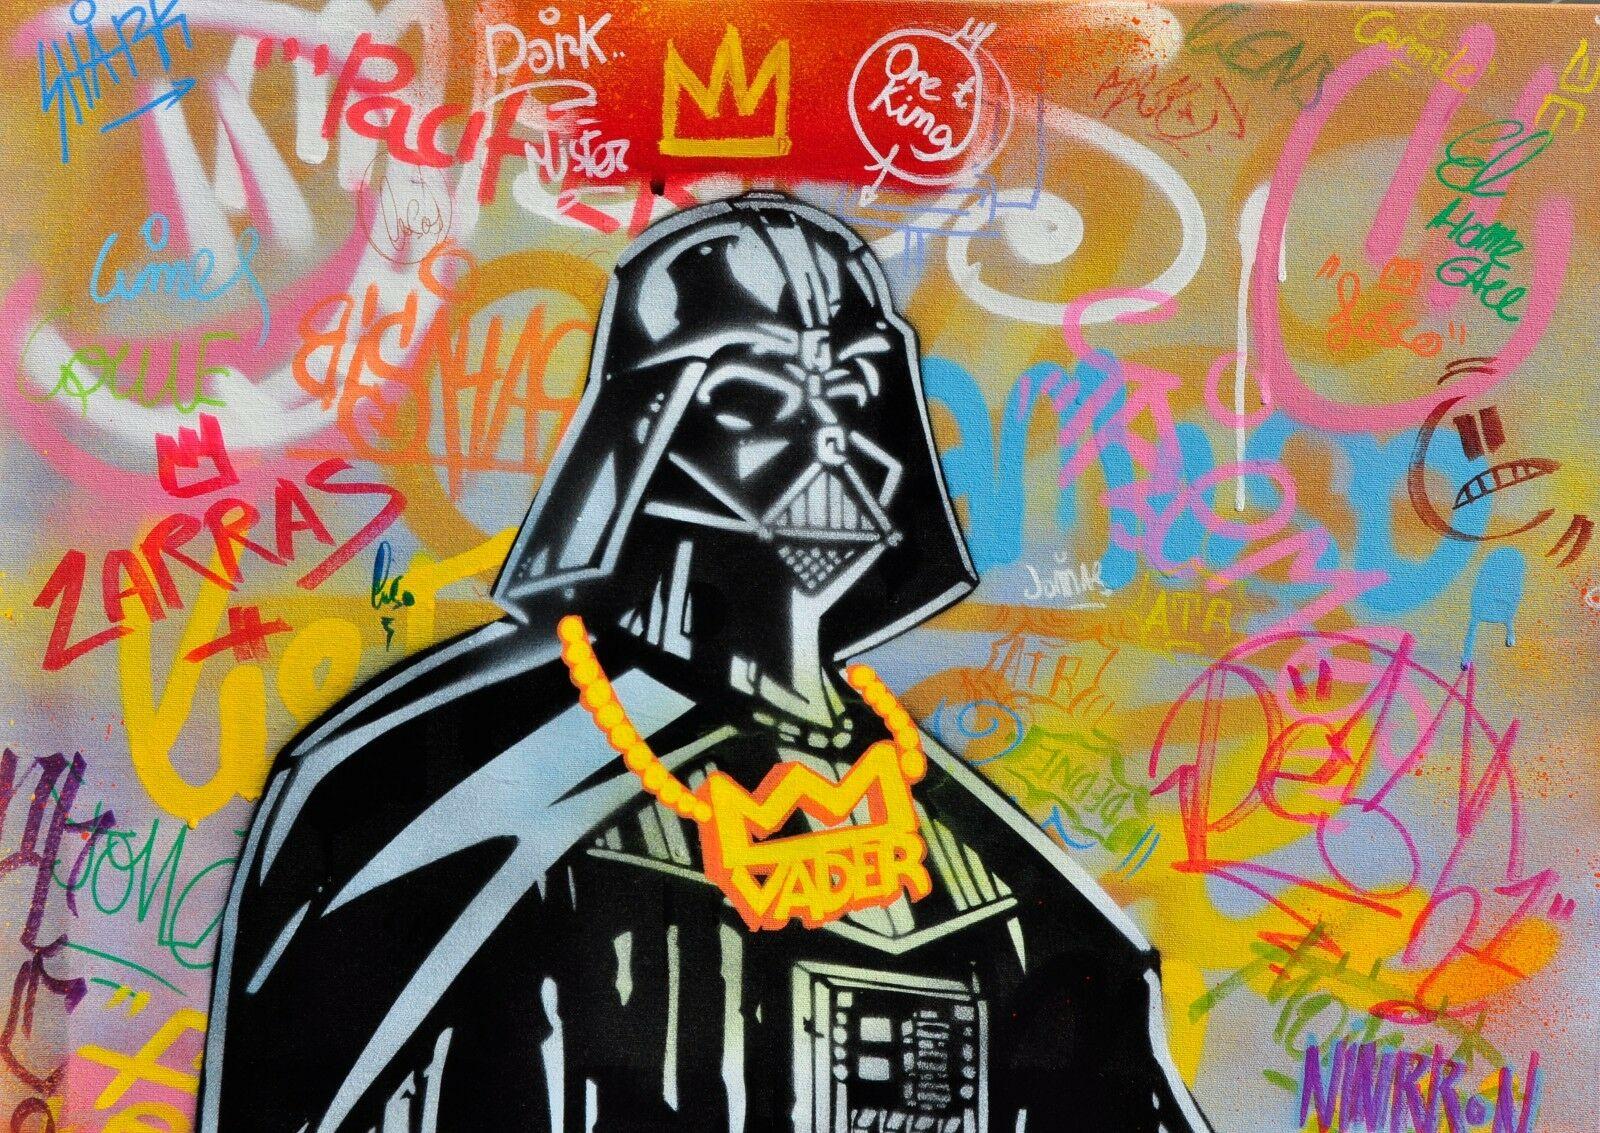 ALBERTO BLANCHART - Ihr Verschluss . Darth Vader (Streetart), Mixed Media Art, von Alberto Blanchart